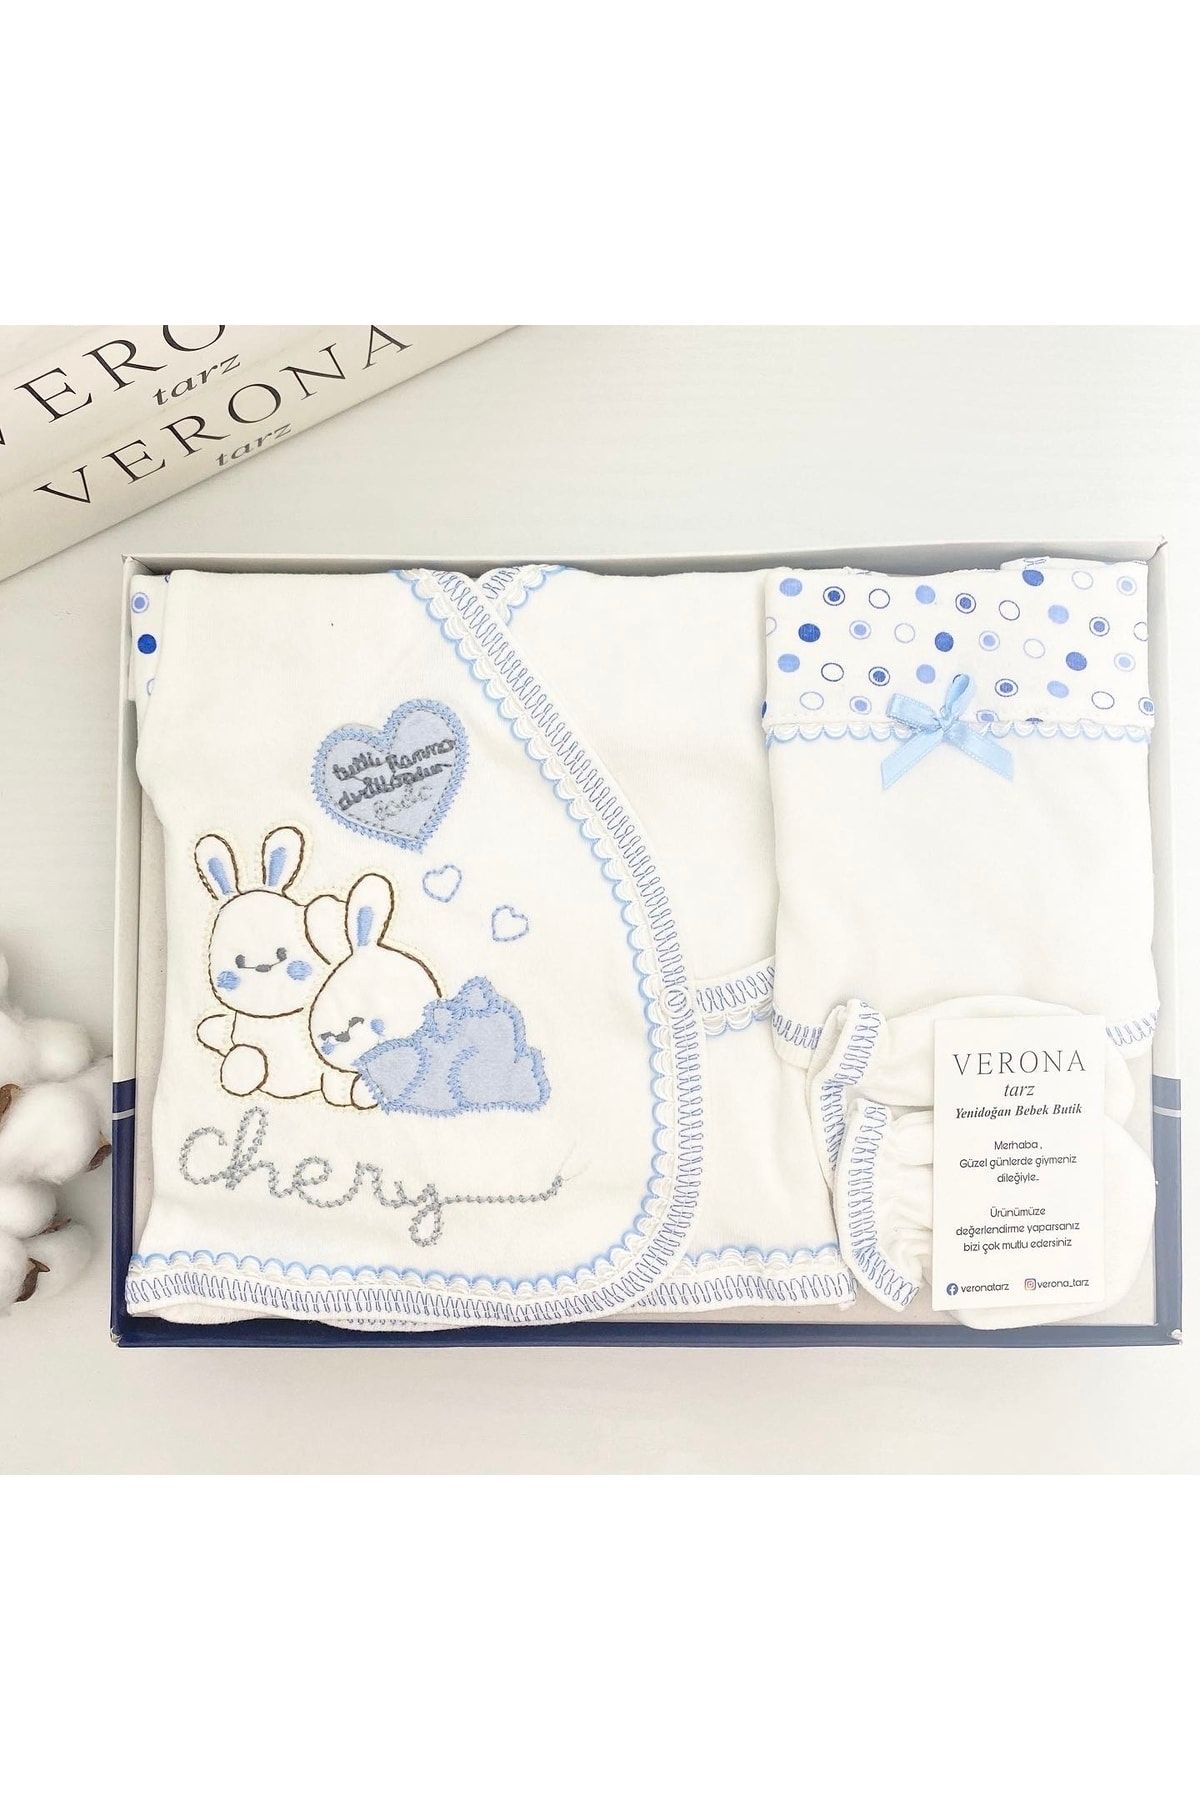 VERONA TARZ Yeni Sezon Basik Tavşanlı 5li Hastane Çıkış Seti Yenidoğan Kıyafeti Takım Kız Erkek Bebek